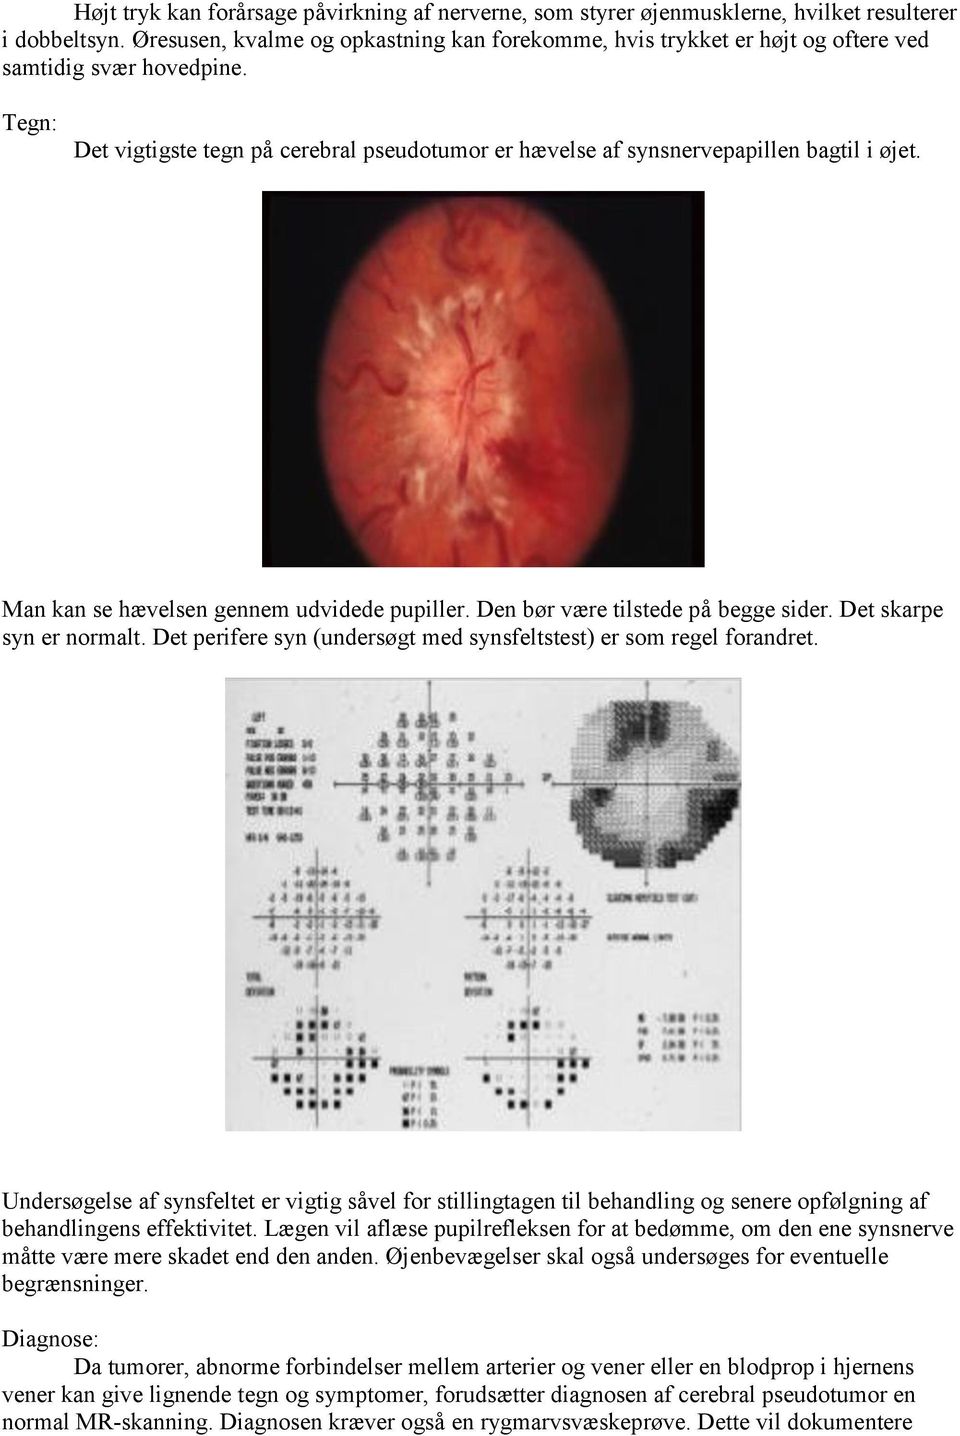 Tegn: Det vigtigste tegn på cerebral pseudotumor er hævelse af synsnervepapillen bagtil i øjet. Man kan se hævelsen gennem udvidede pupiller. Den bør være tilstede på begge sider.